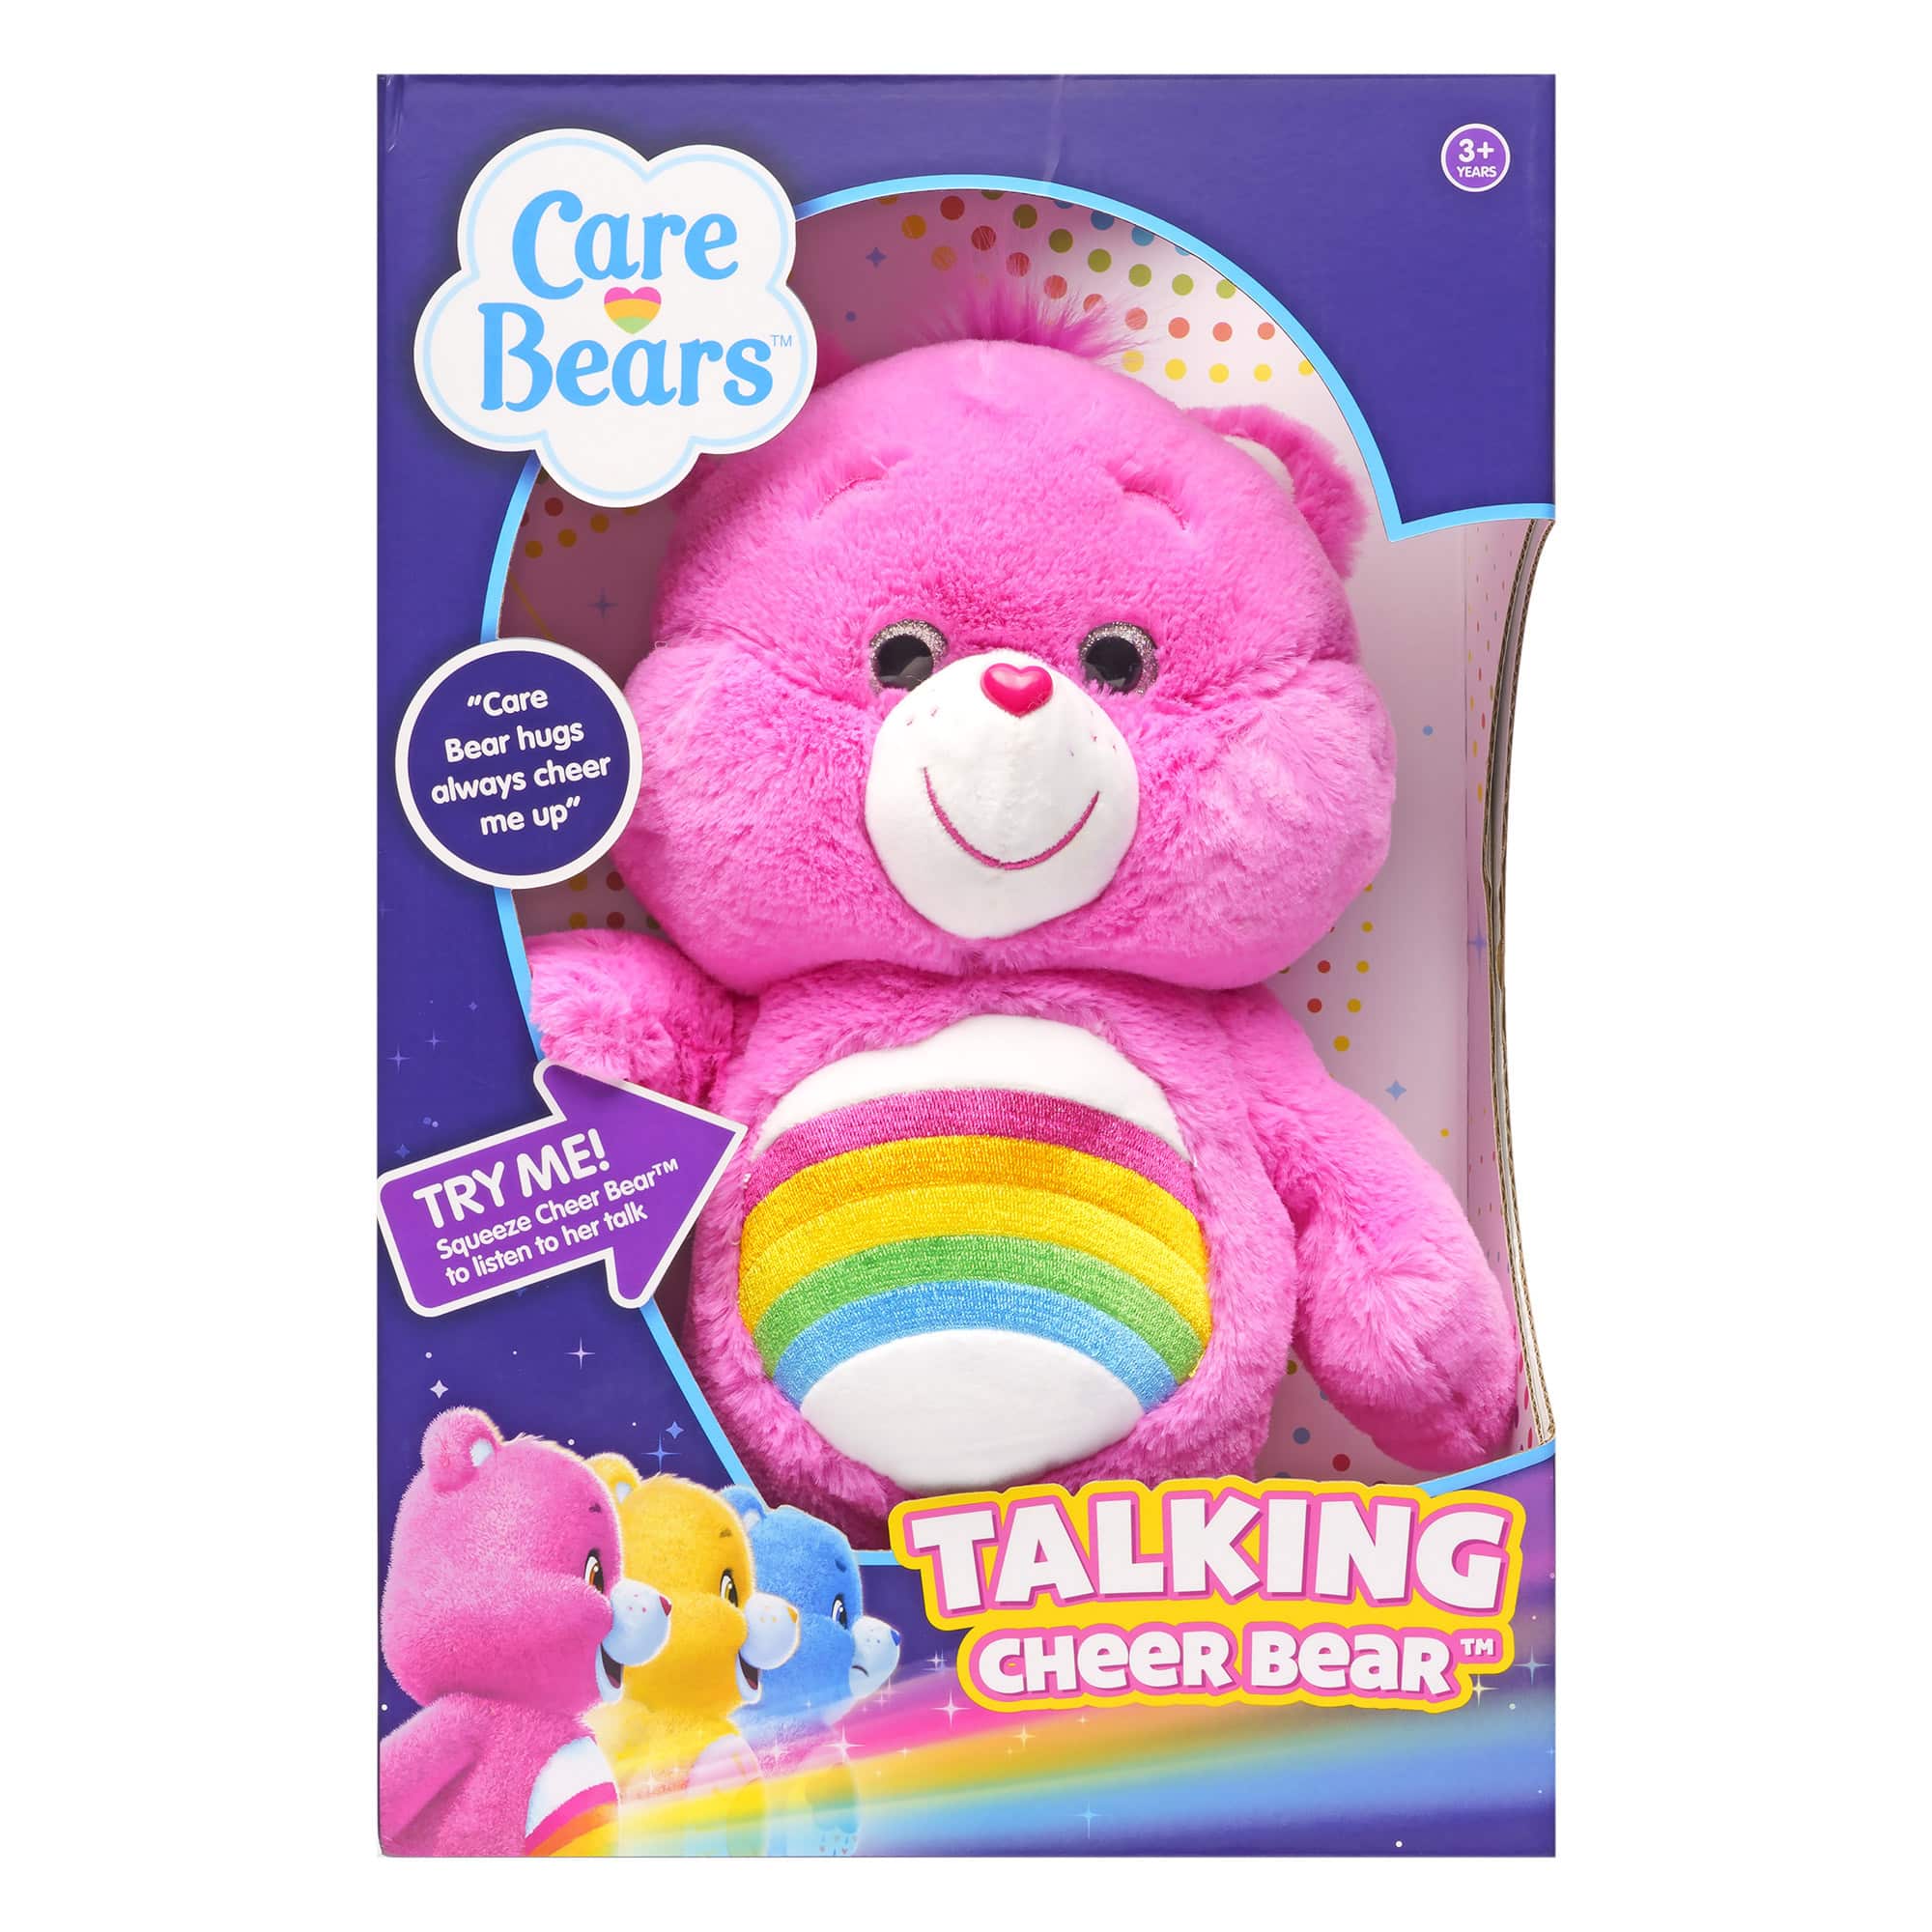 Care Bears - Talking Cheer Bear Plush